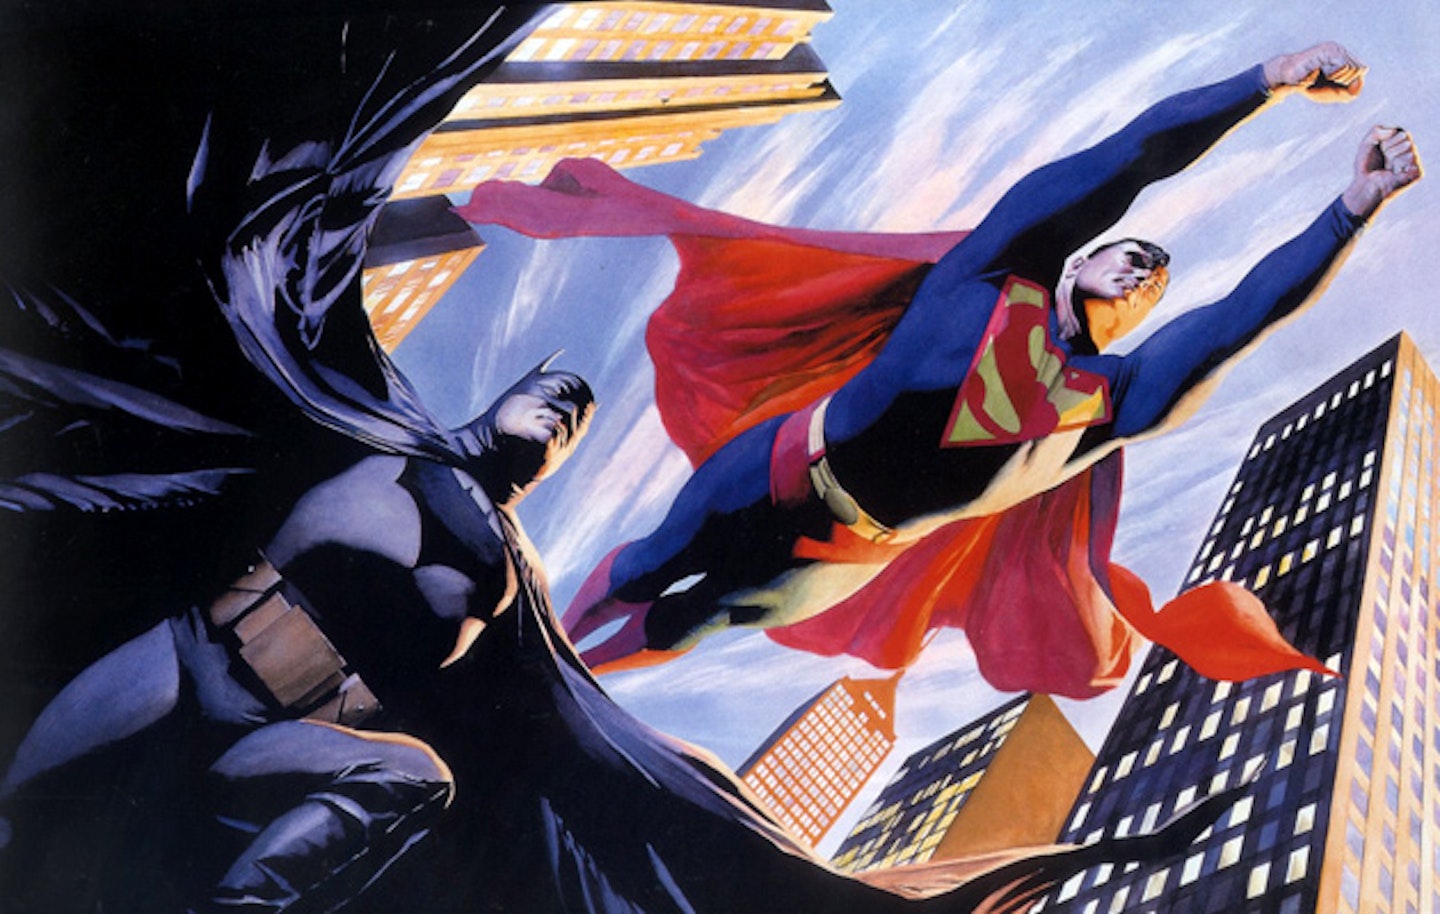 Comic-Con 2013: Batman / Superman Film for 2015?